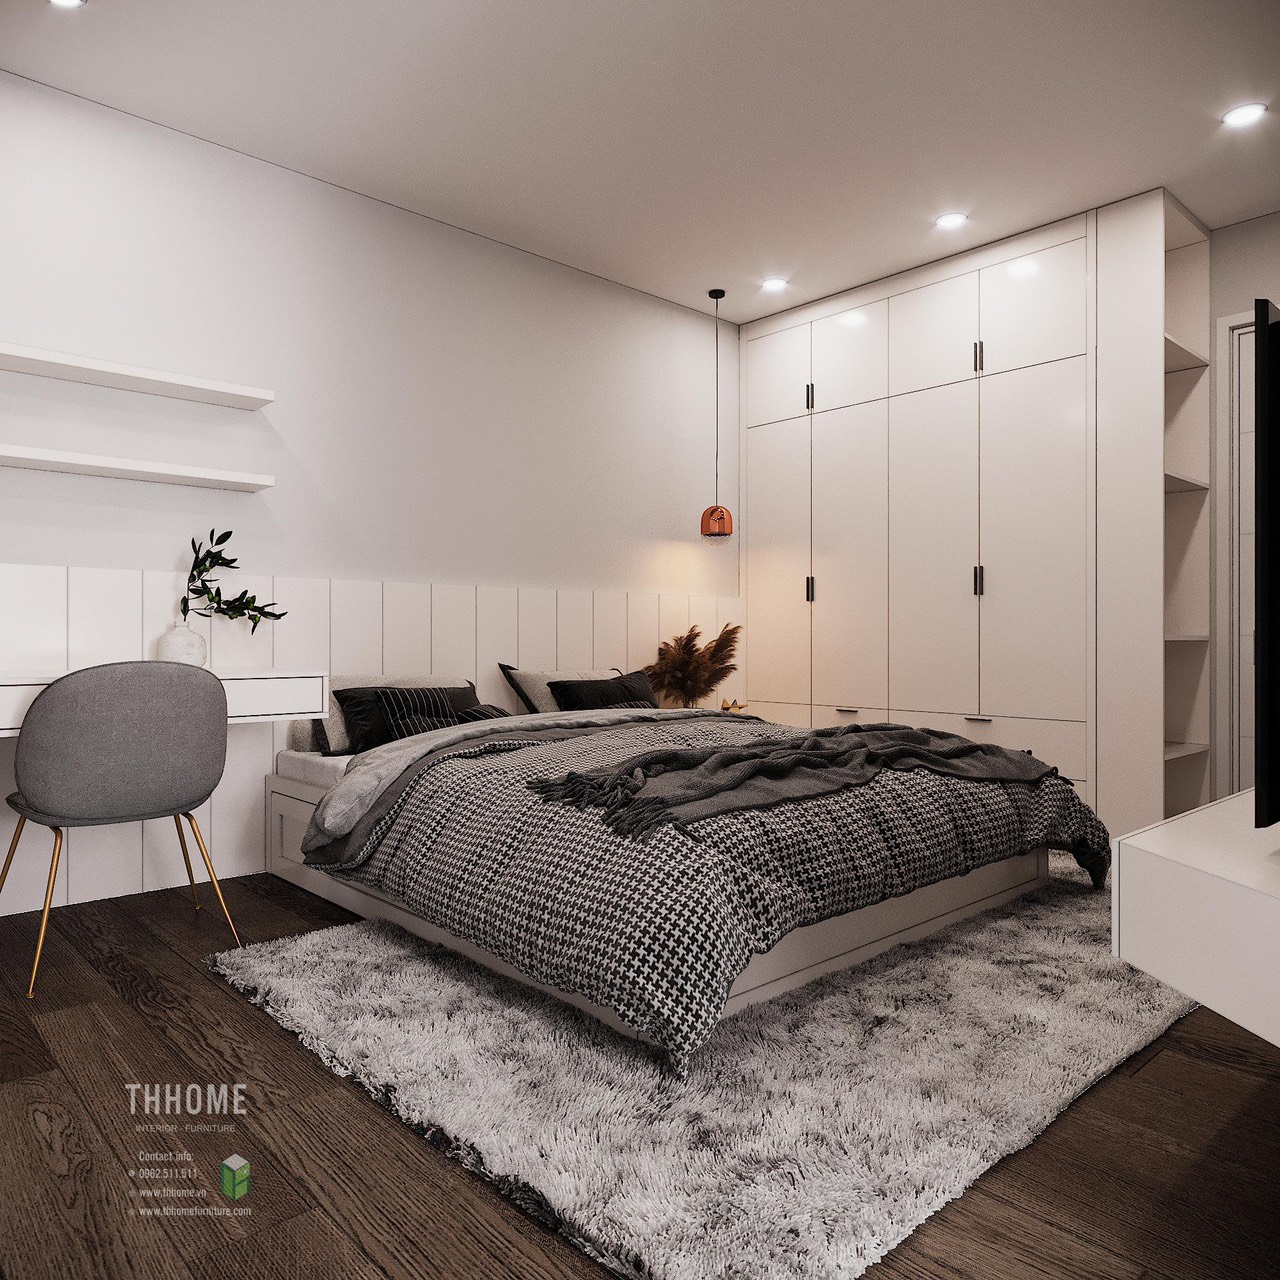 Phòng ngủ được thiết kế đơn giản nhưng là nơi được chú trọng nhiều nhất, đem đến không gian thoải mái cho sự nghỉ ngơi, thư giãn